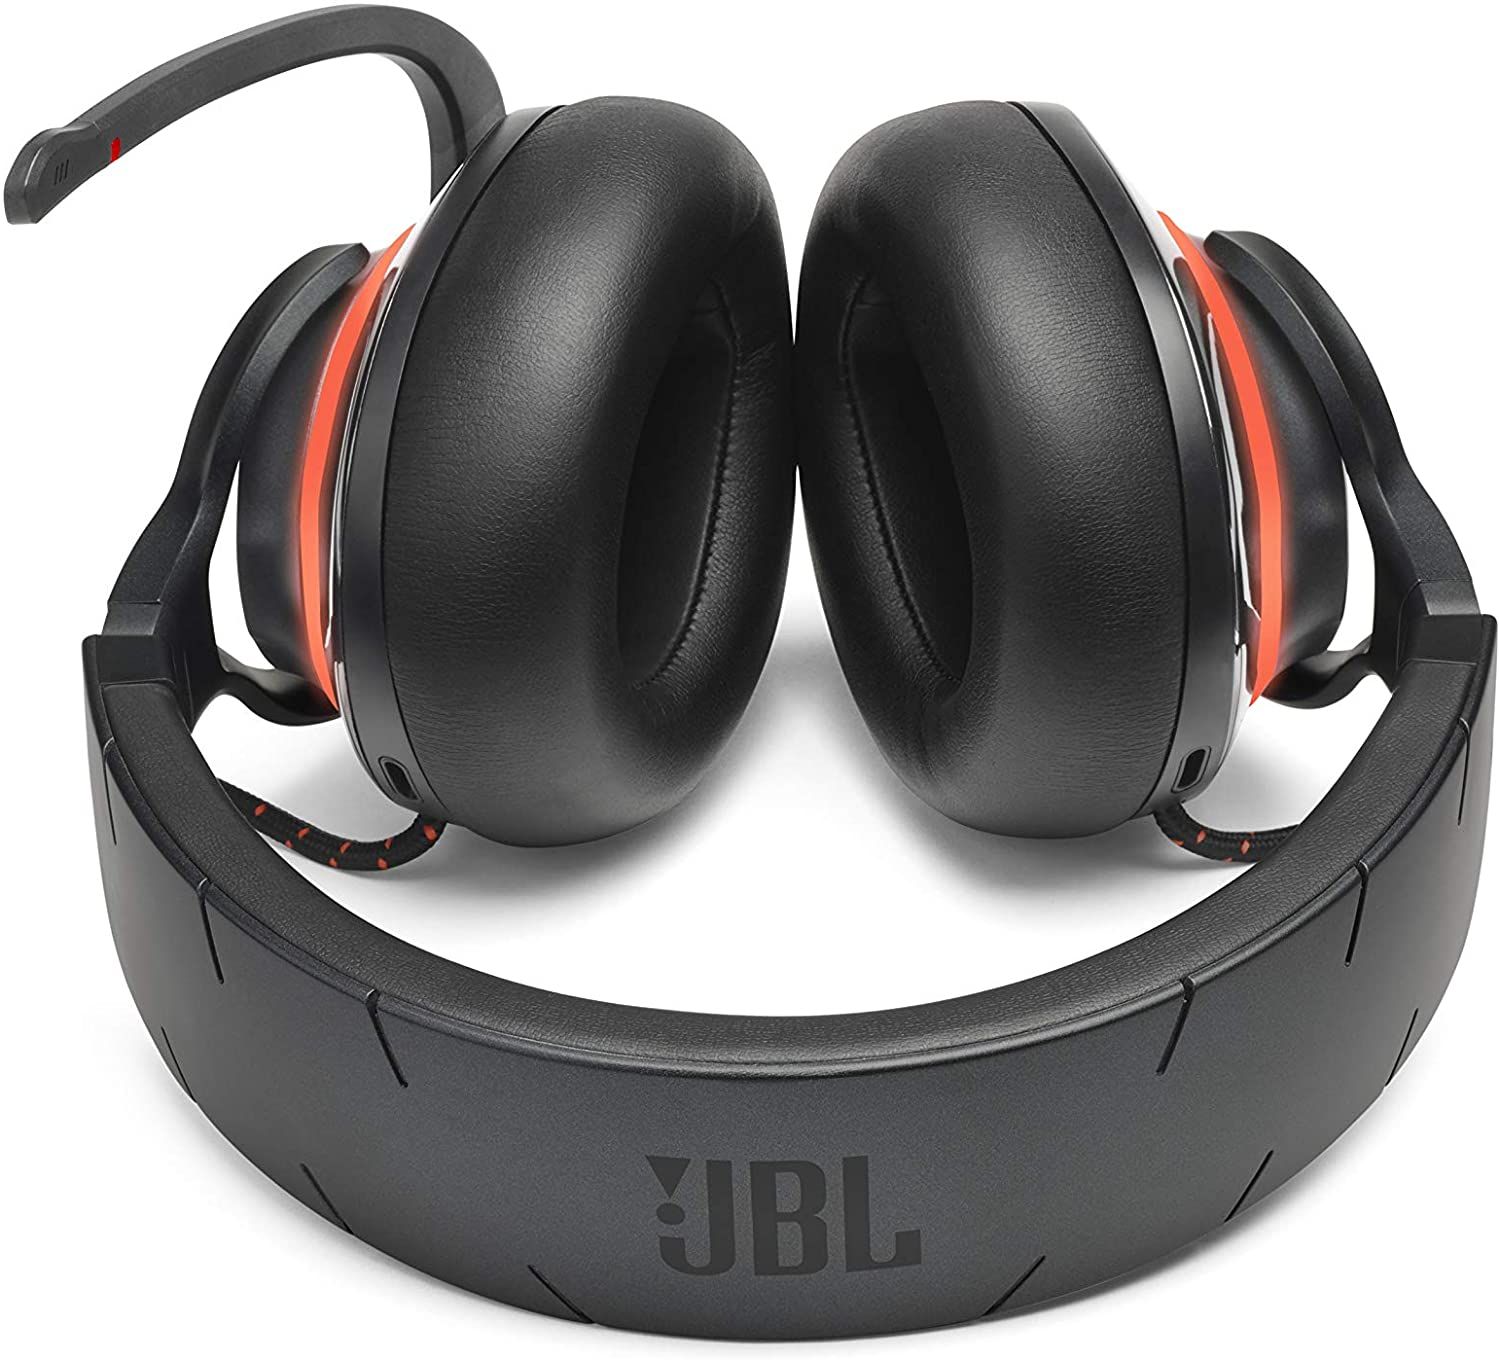 JBL Quantum 800 headset